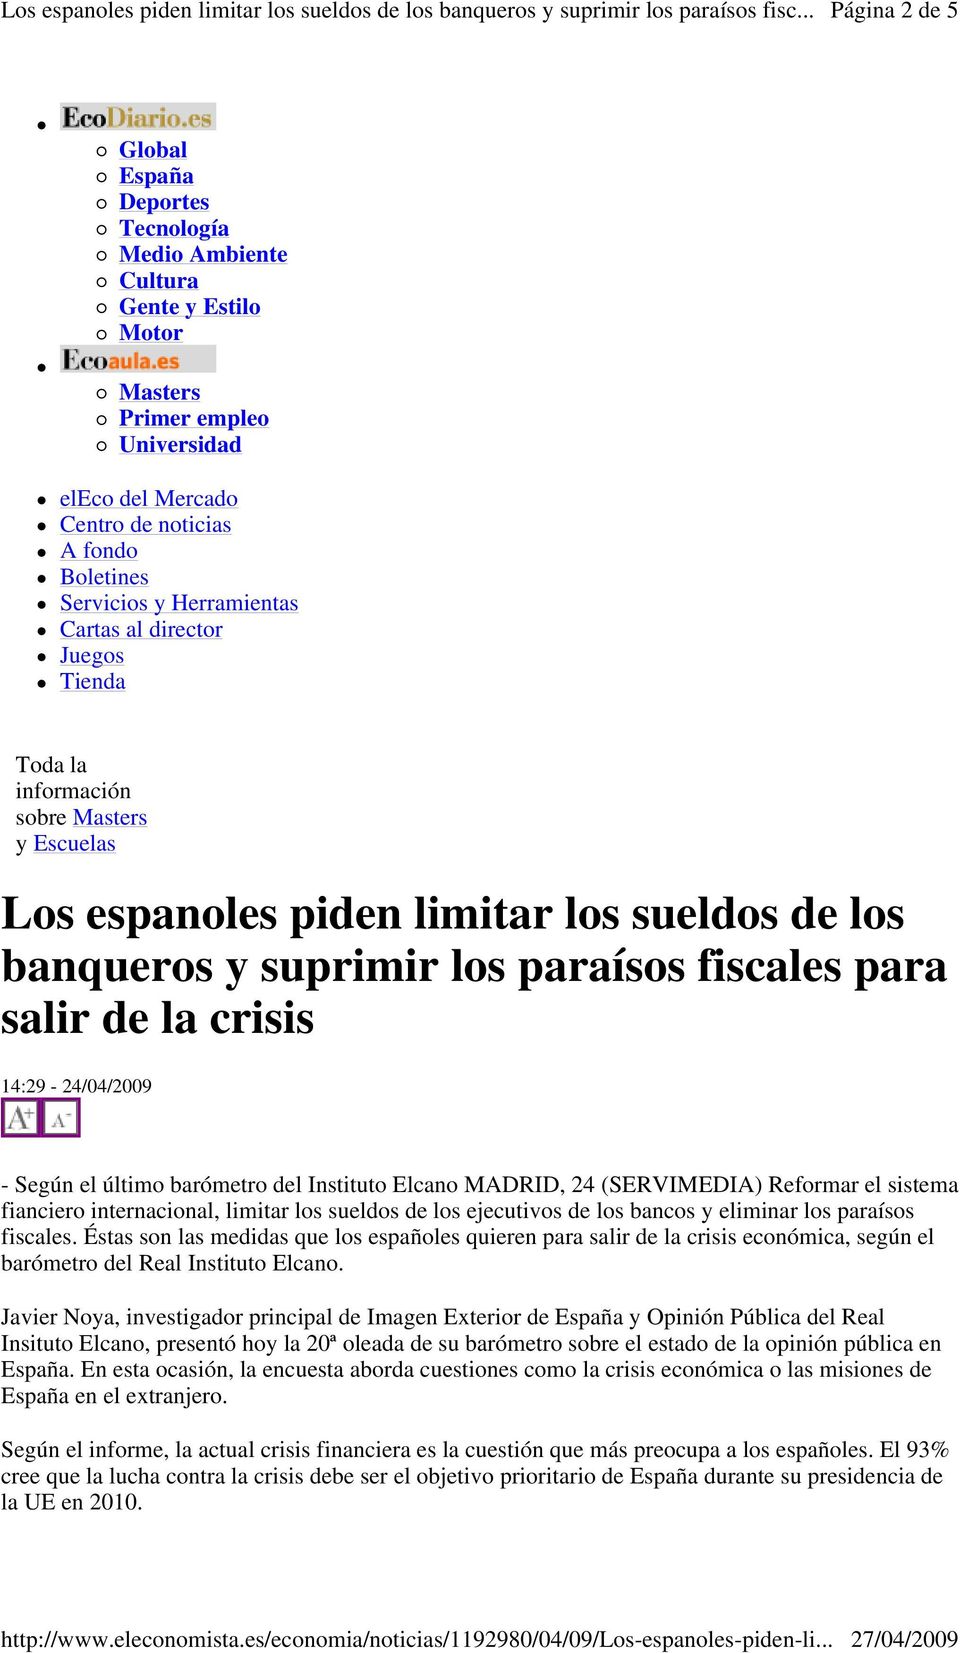 crisis 14:29-24/04/2009 - Según el último barómetro del Instituto Elcano MADRID, 24 (SERVIMEDIA) Reformar el sistema fianciero internacional, limitar los sueldos de los ejecutivos de los bancos y